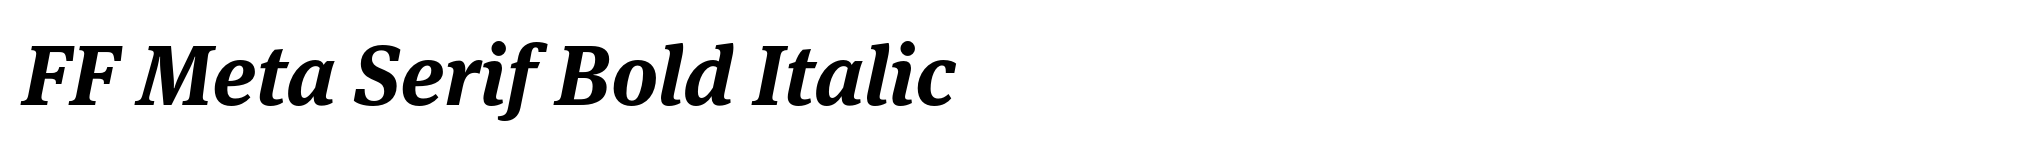 FF Meta Serif Bold Italic image